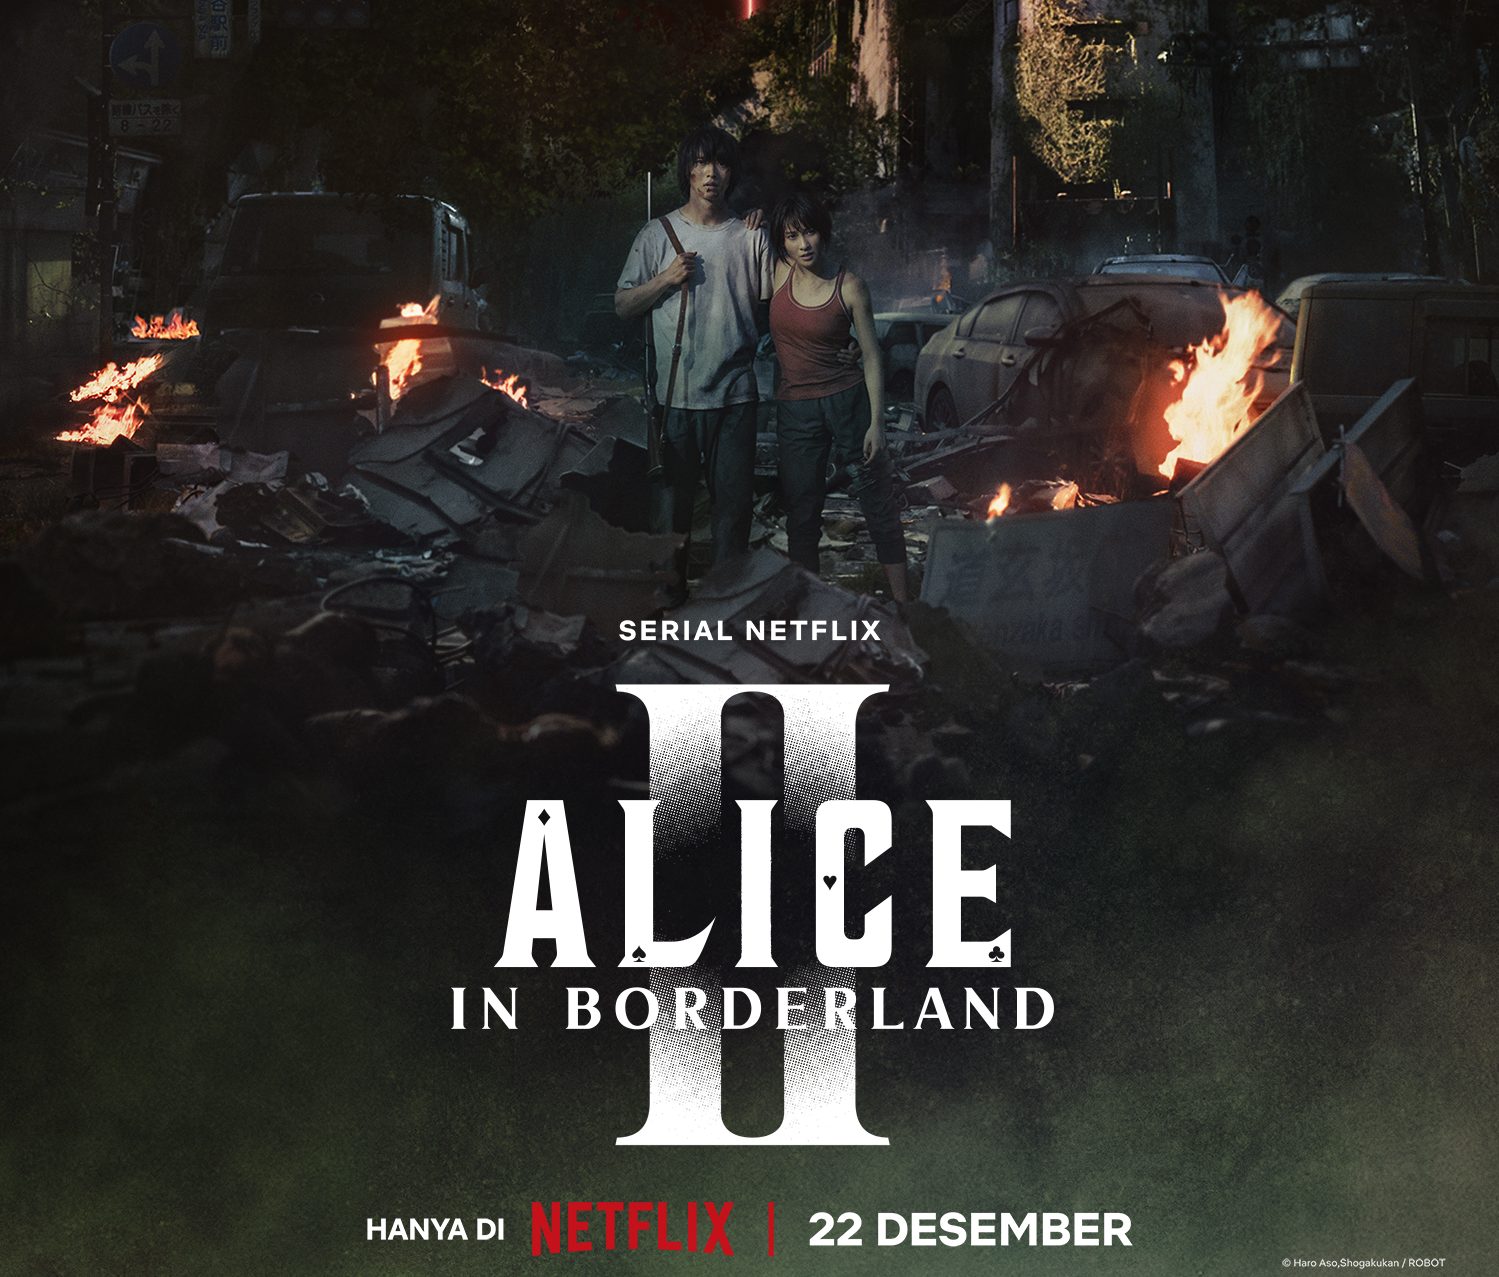 Nonton Alice in Borderland Season 2 Gratis, Permainan di Kota Tokyo Semakin Mematikan